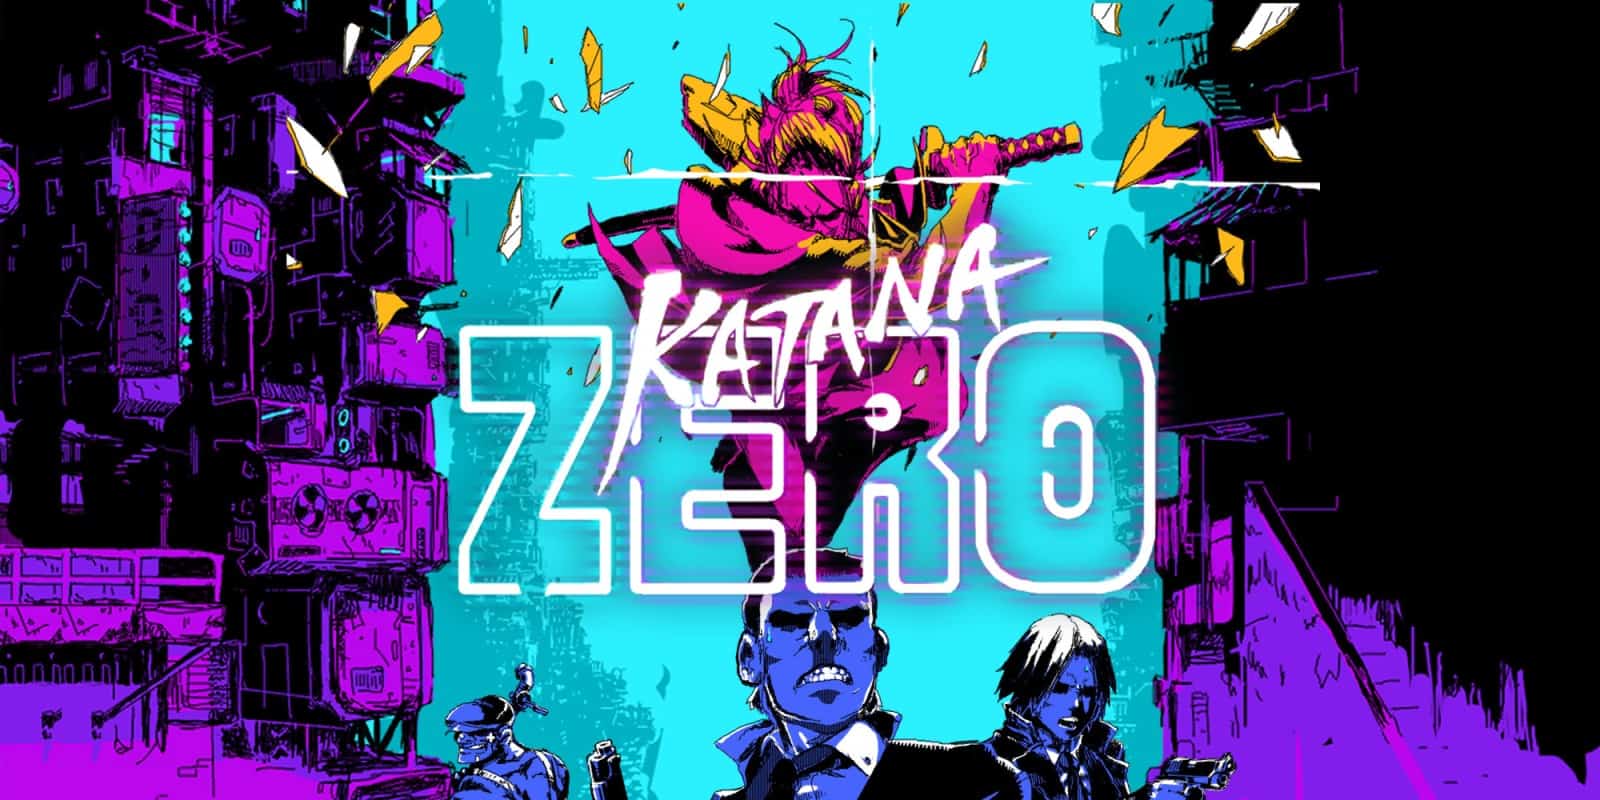 PC Katana Zero SaveGame 100